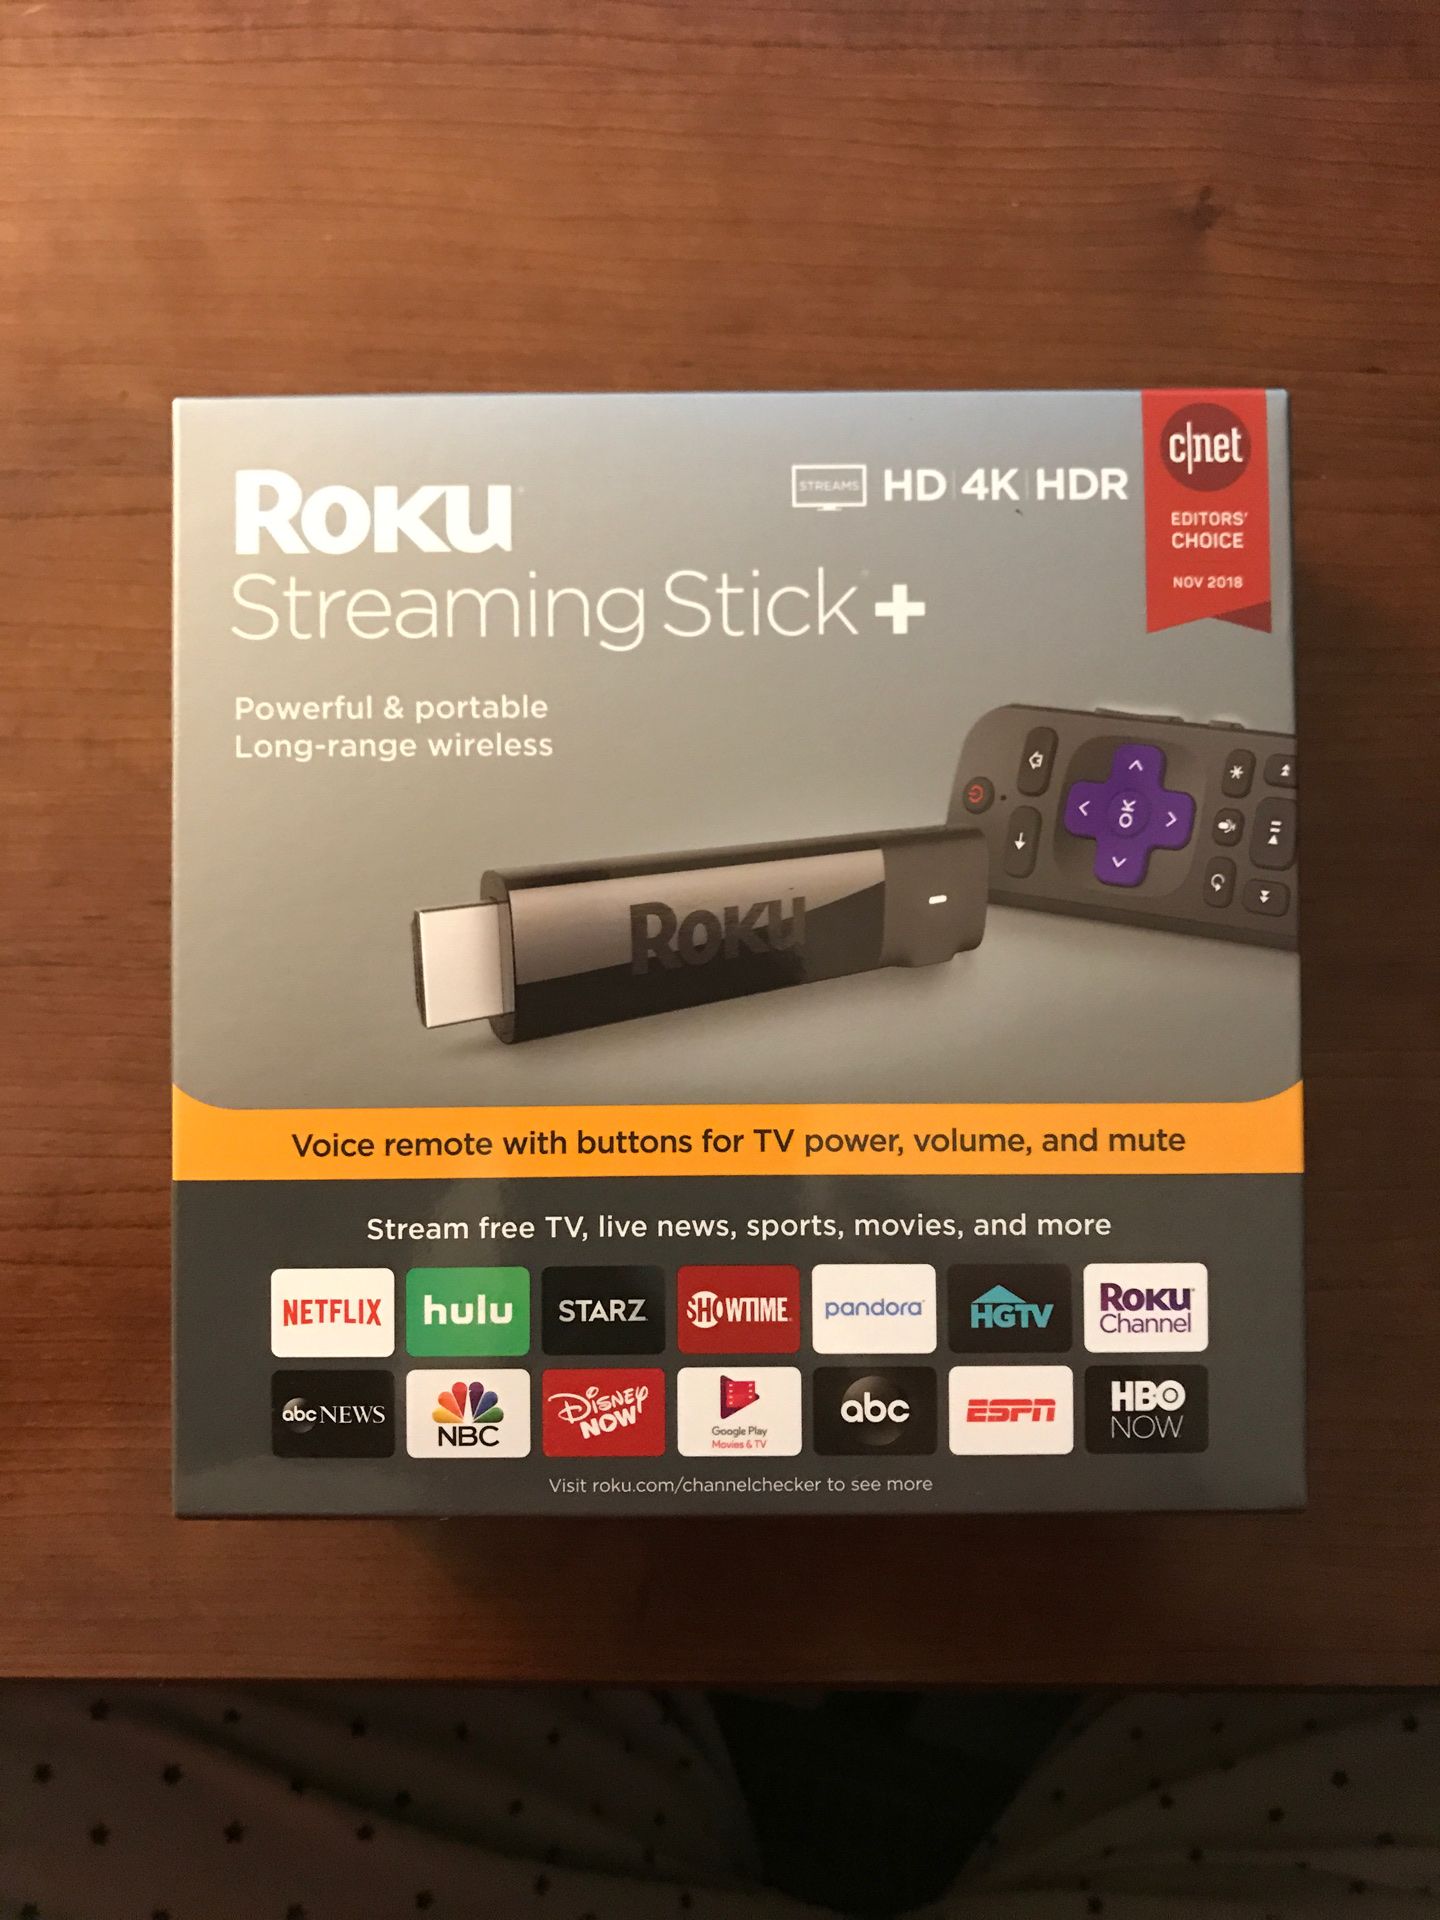 Roku Streaming Stick + (HD 4K HDR)